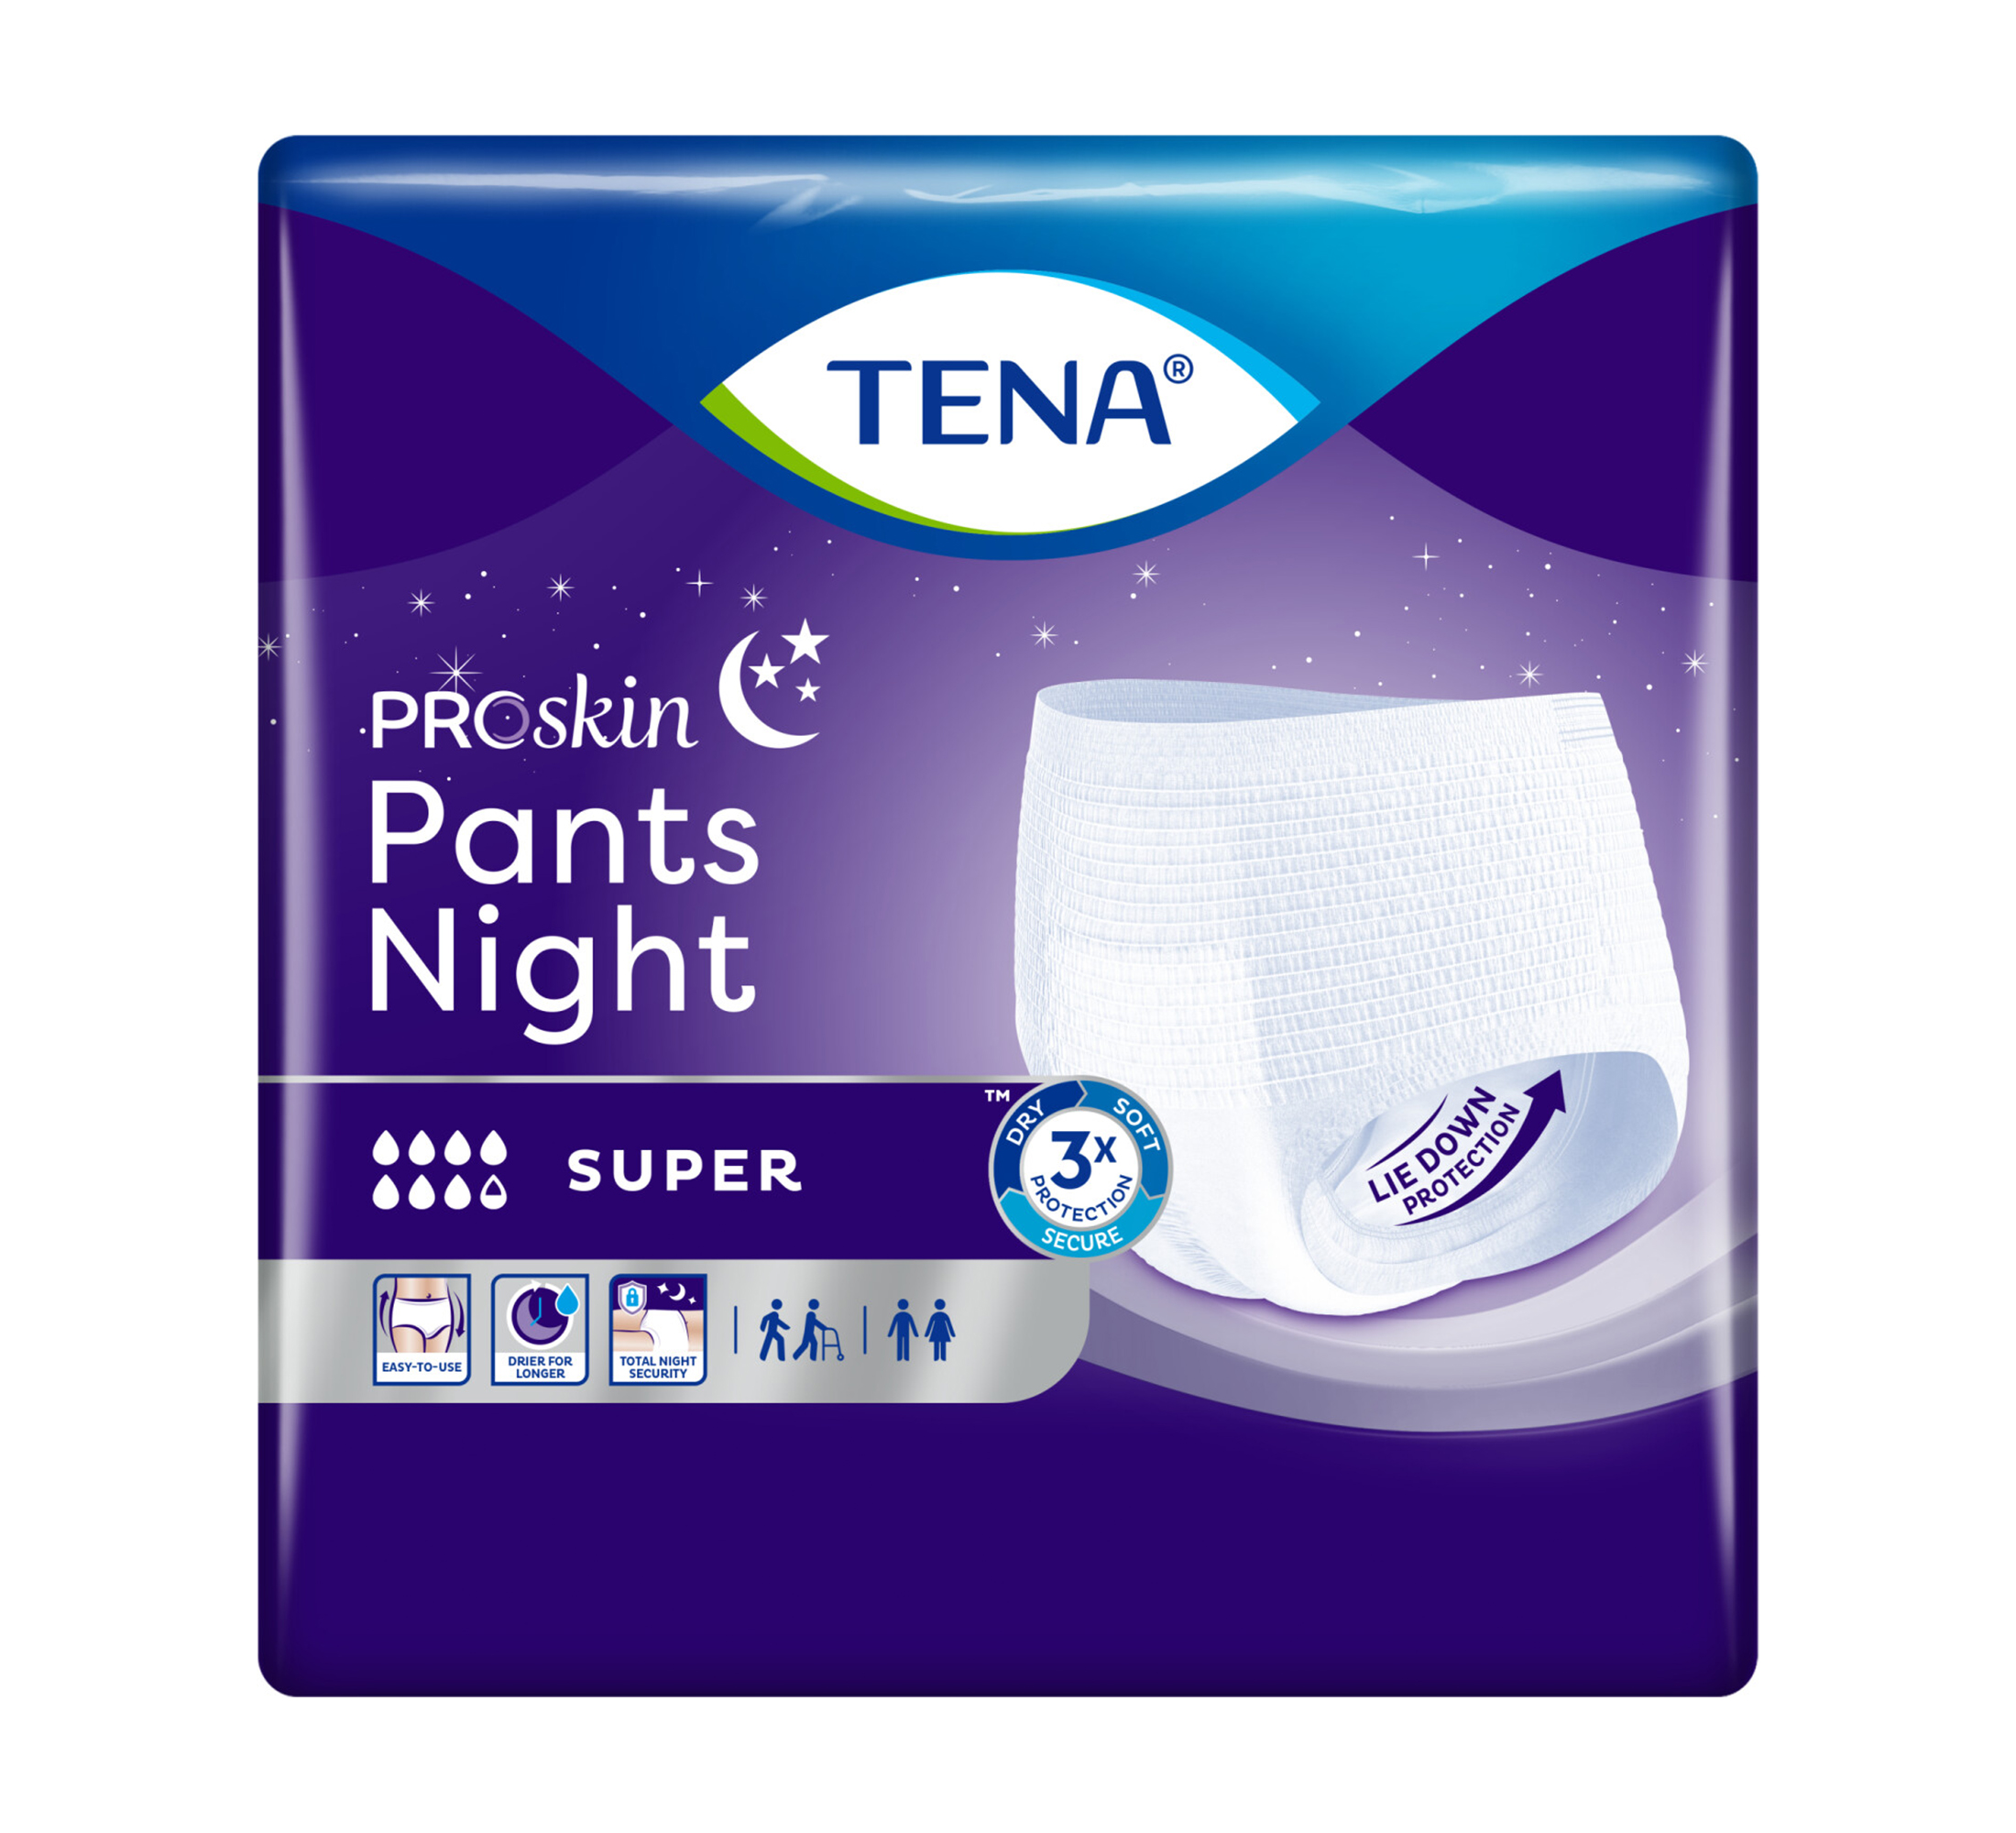 TENA ProSkin Pants Night Einweghosen, Saugfähigkeit 8/8, Größe L, 10 Stk.